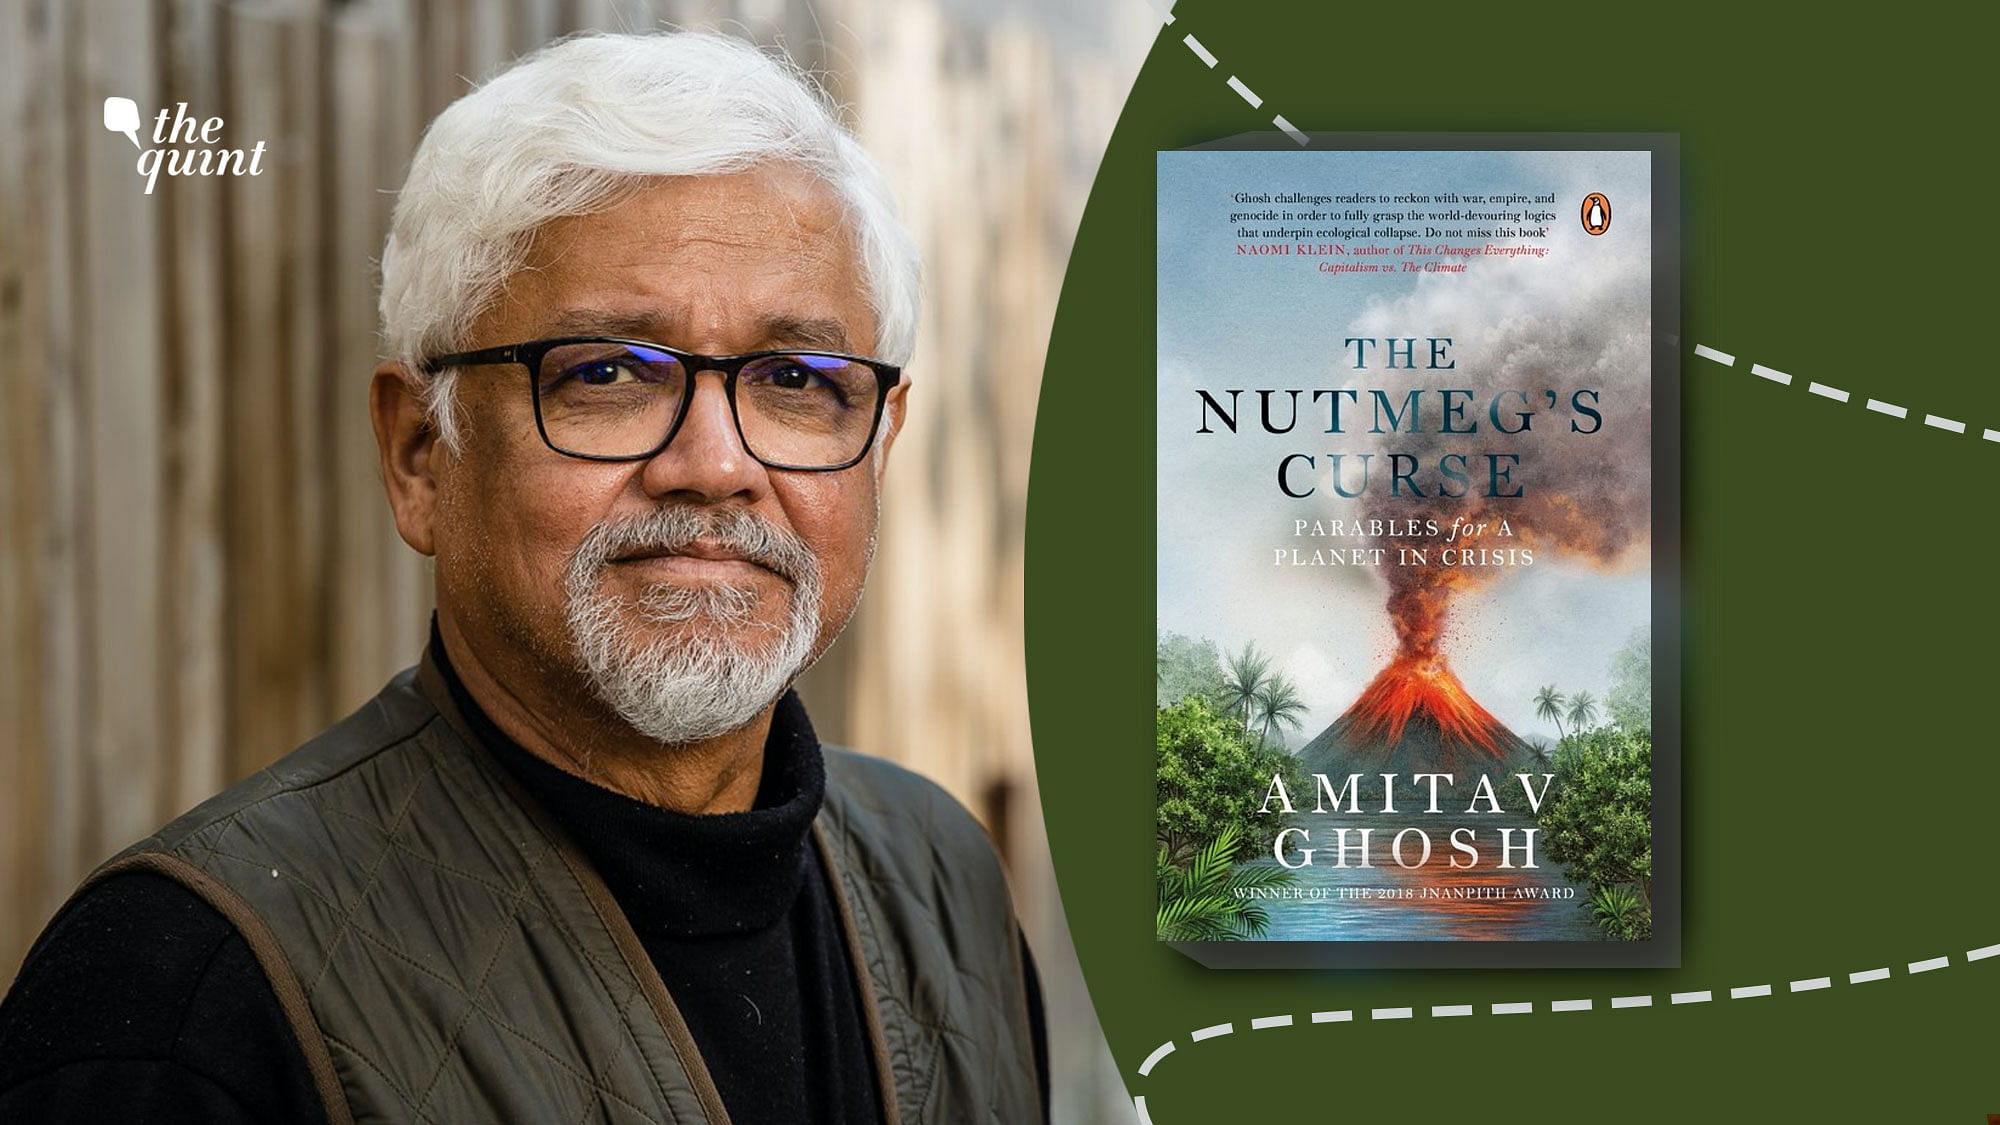 <div class="paragraphs"><p>Amitav Ghosh has just released his new book, <em>The Nutmeg's Curse.</em></p></div>